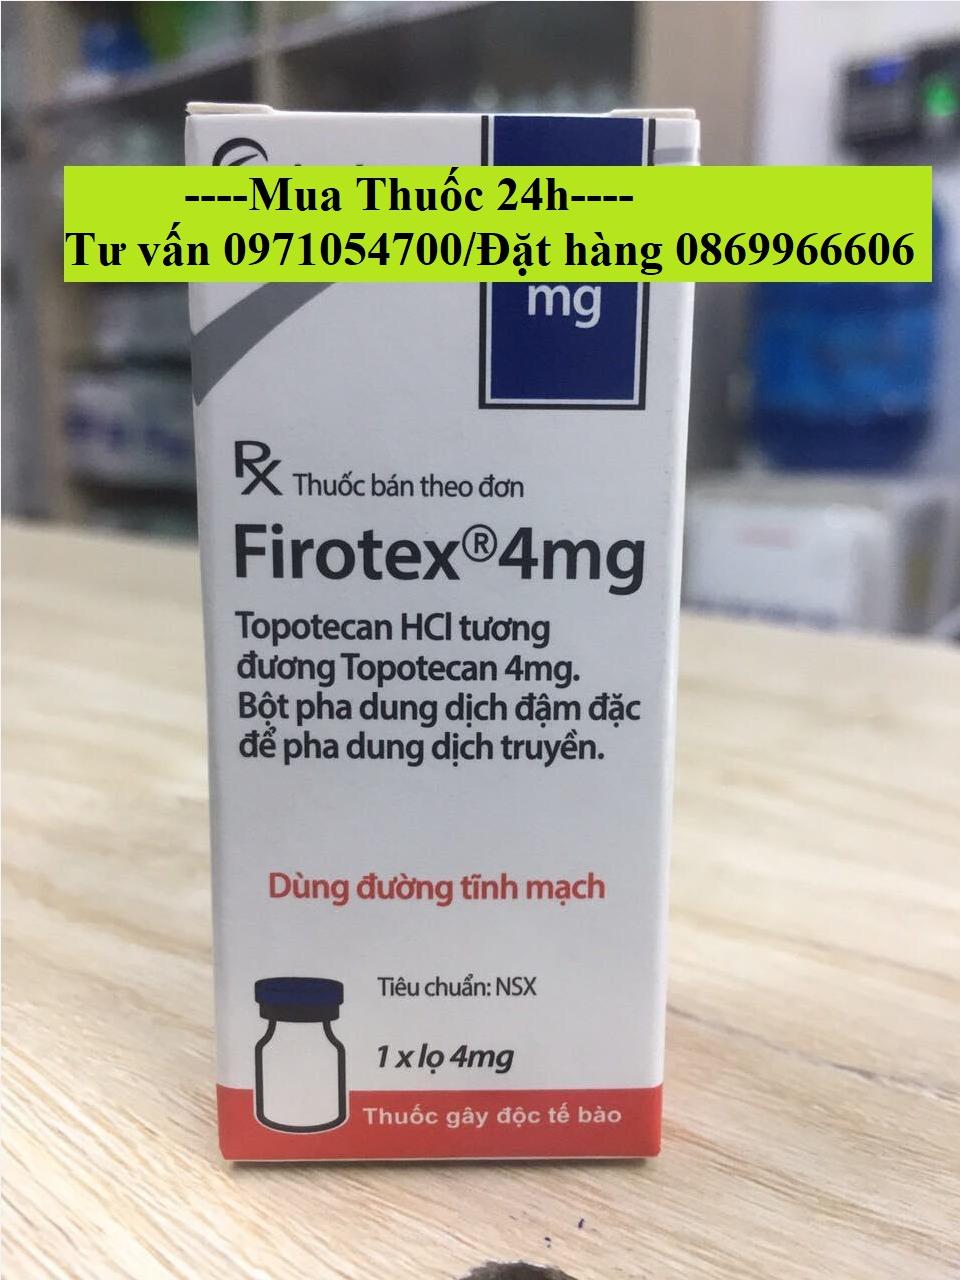 Thuốc Firotex 4mg Topotecan giá bao nhiêu mua ở đâu?